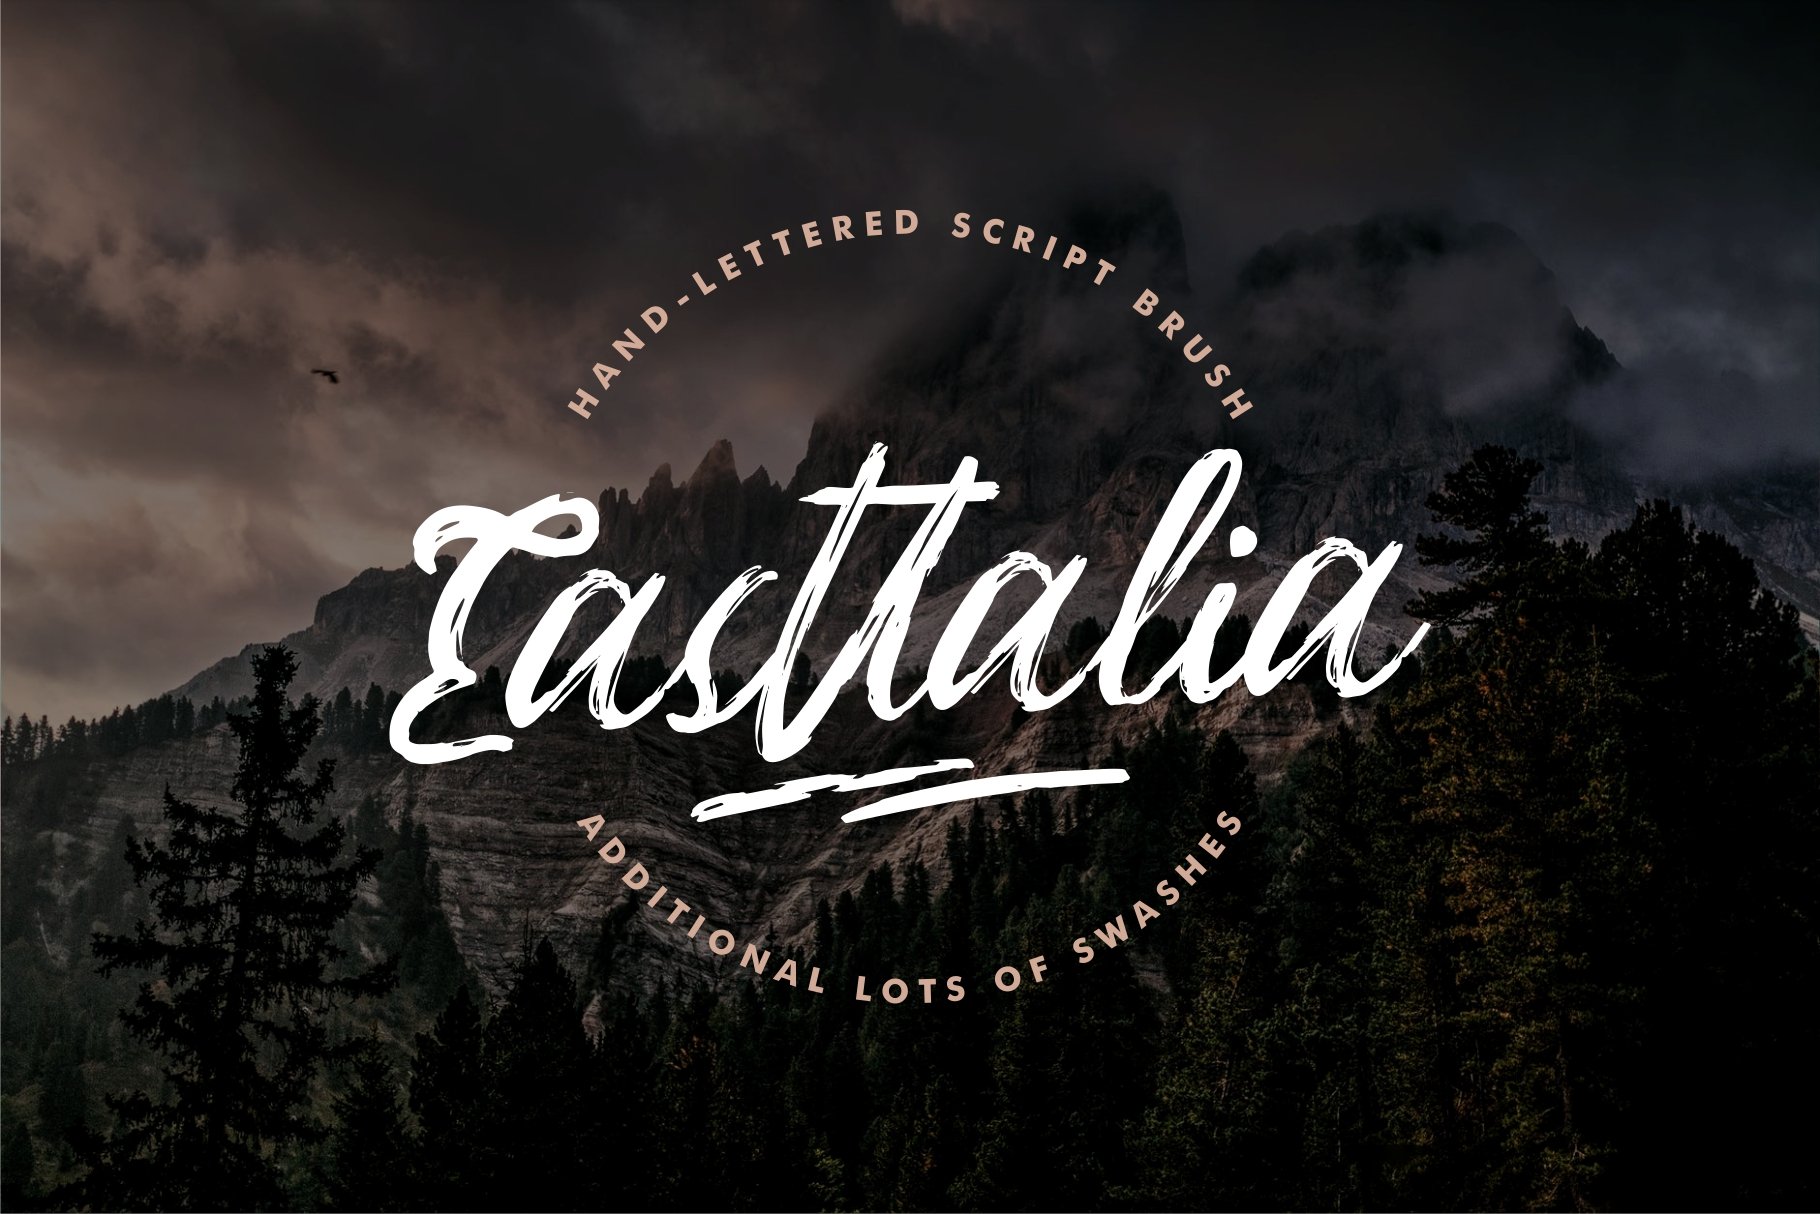 Easttalia - Handdrawn Script cover image.